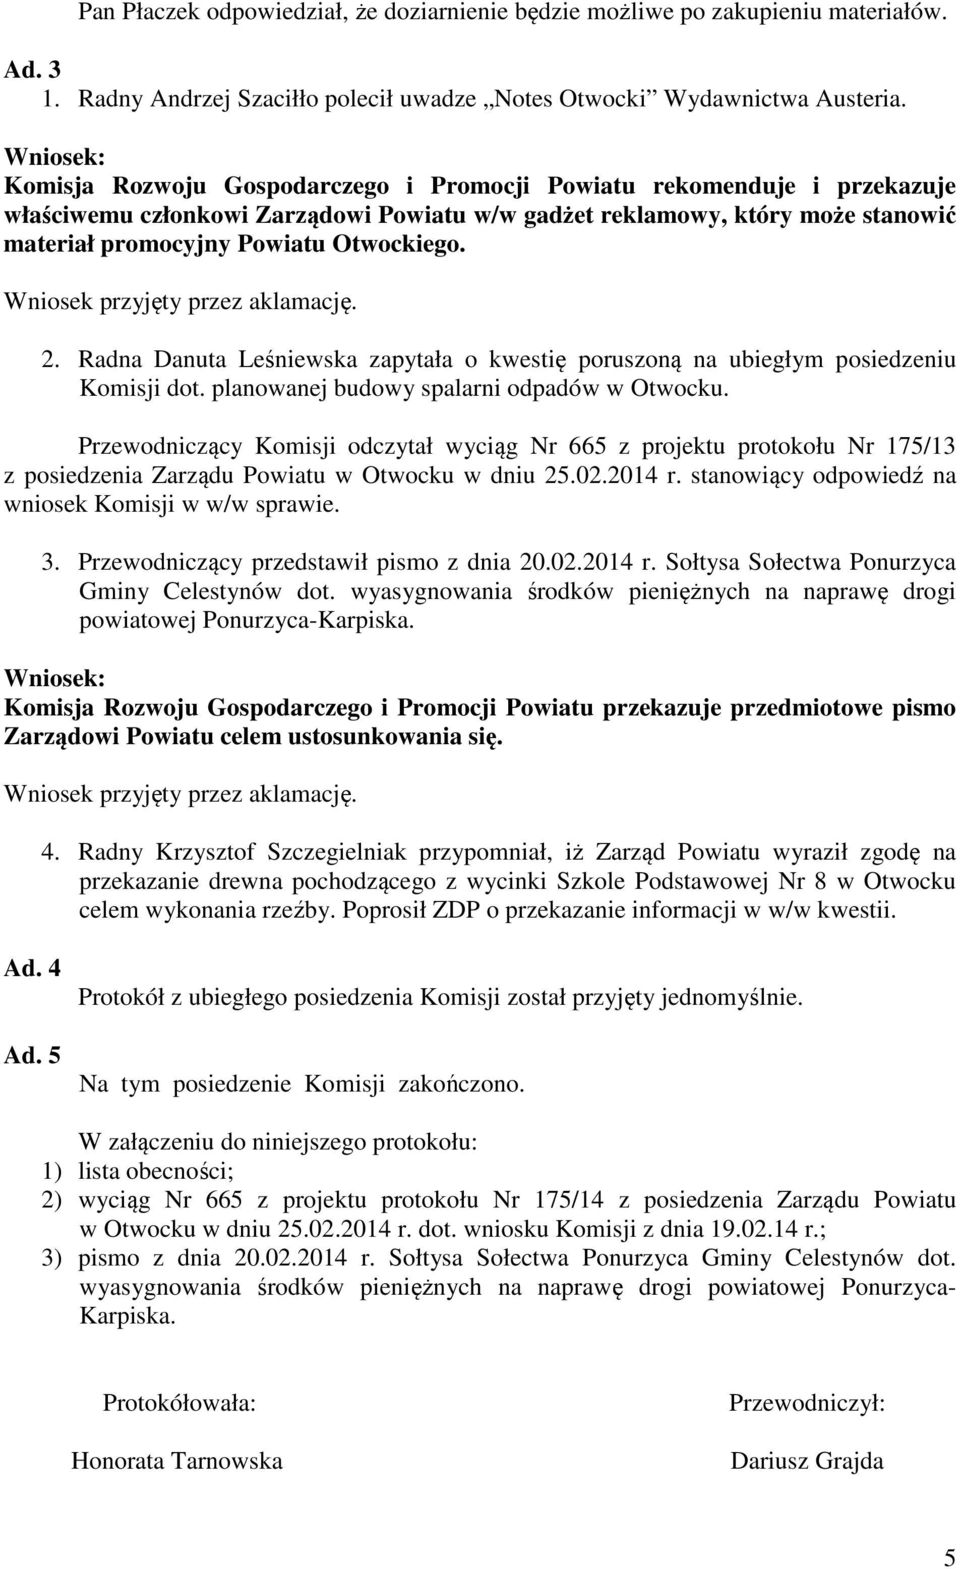 Radna Danuta Leśniewska zapytała o kwestię poruszoną na ubiegłym posiedzeniu Komisji dot. planowanej budowy spalarni odpadów w Otwocku.